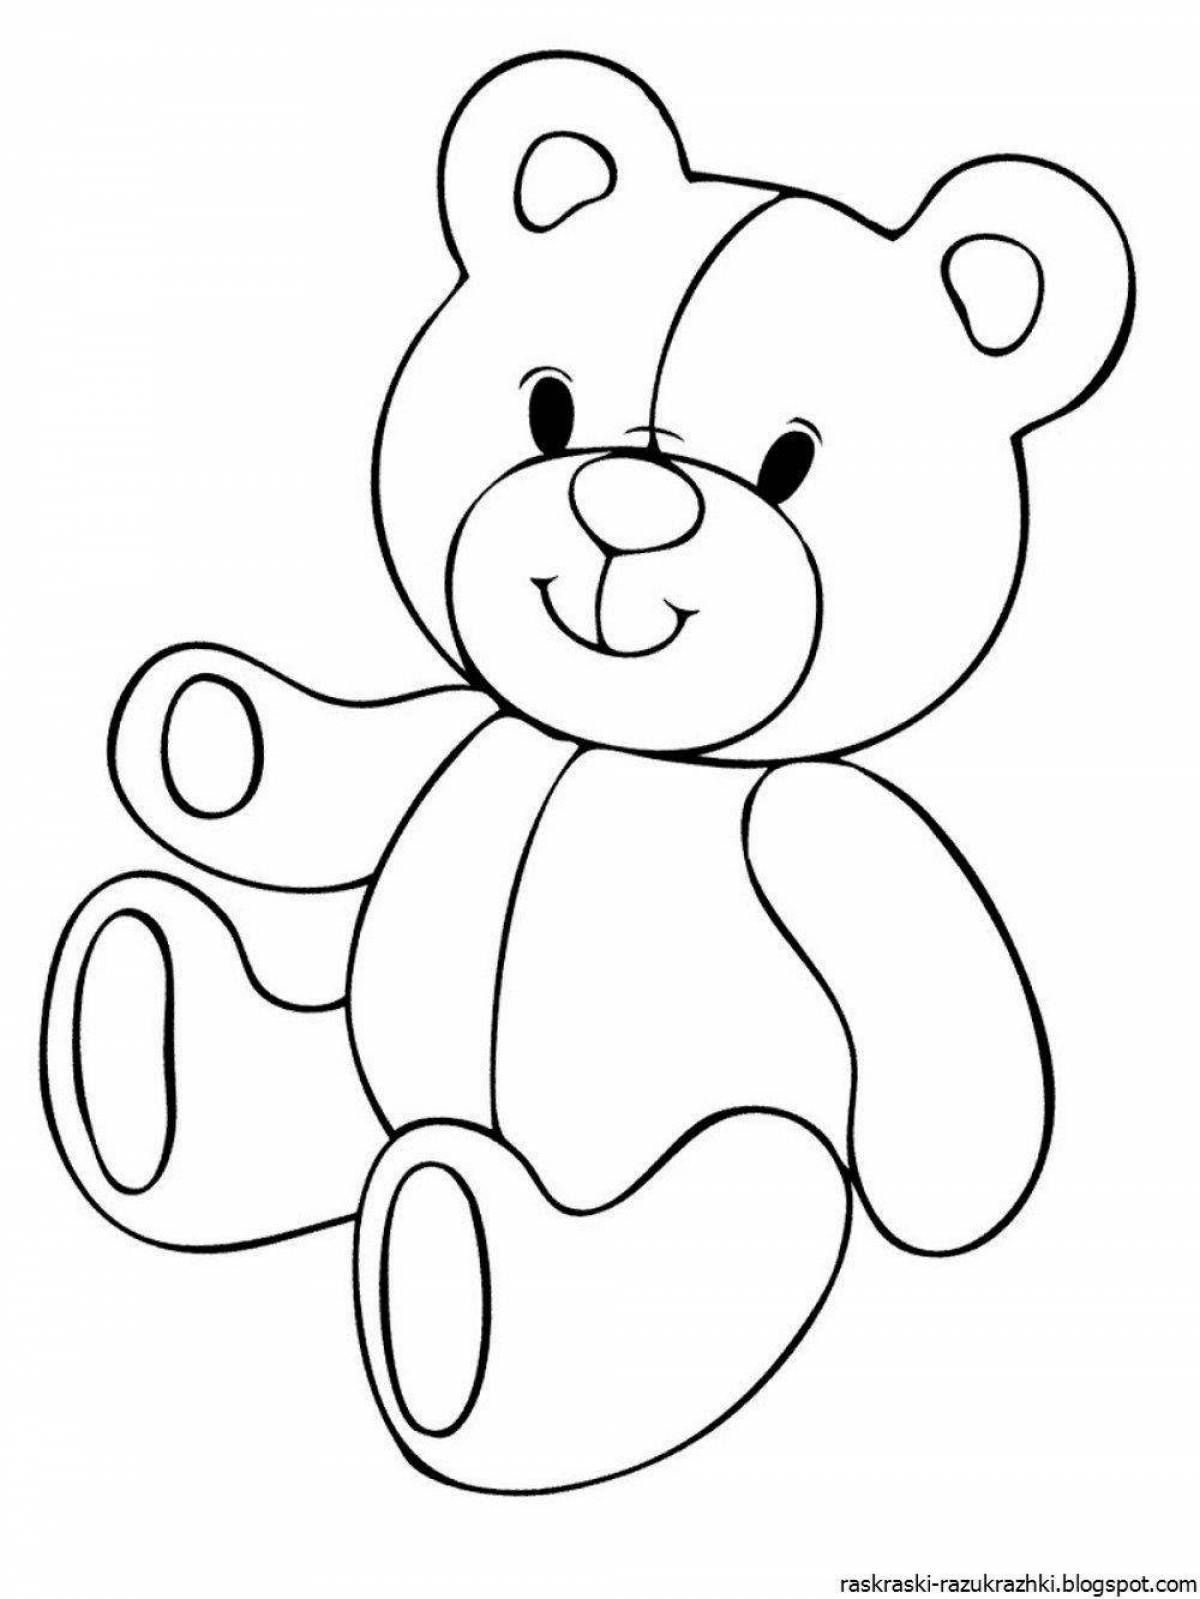 Drawing of a cute teddy bear